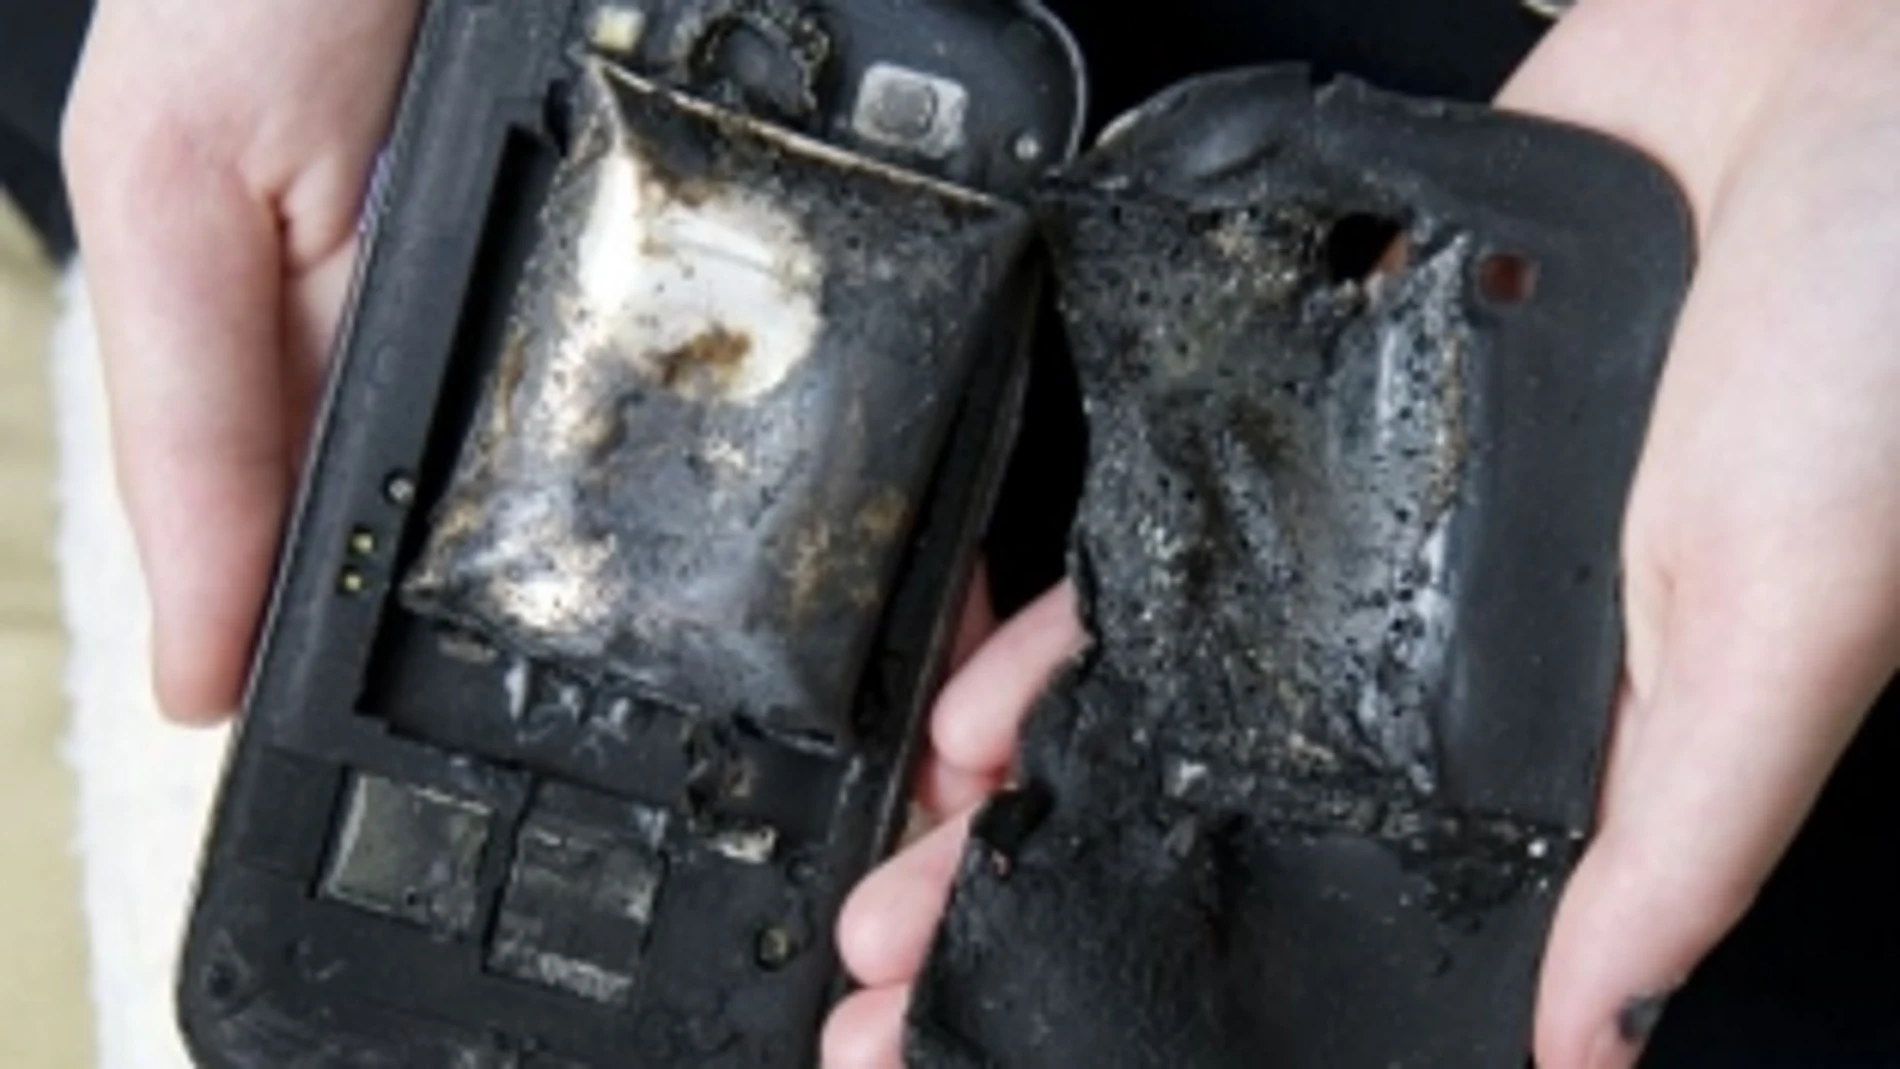 La explosión de un Samsung Galaxy S3 provoca quemaduras de tercer grado a una joven suiza